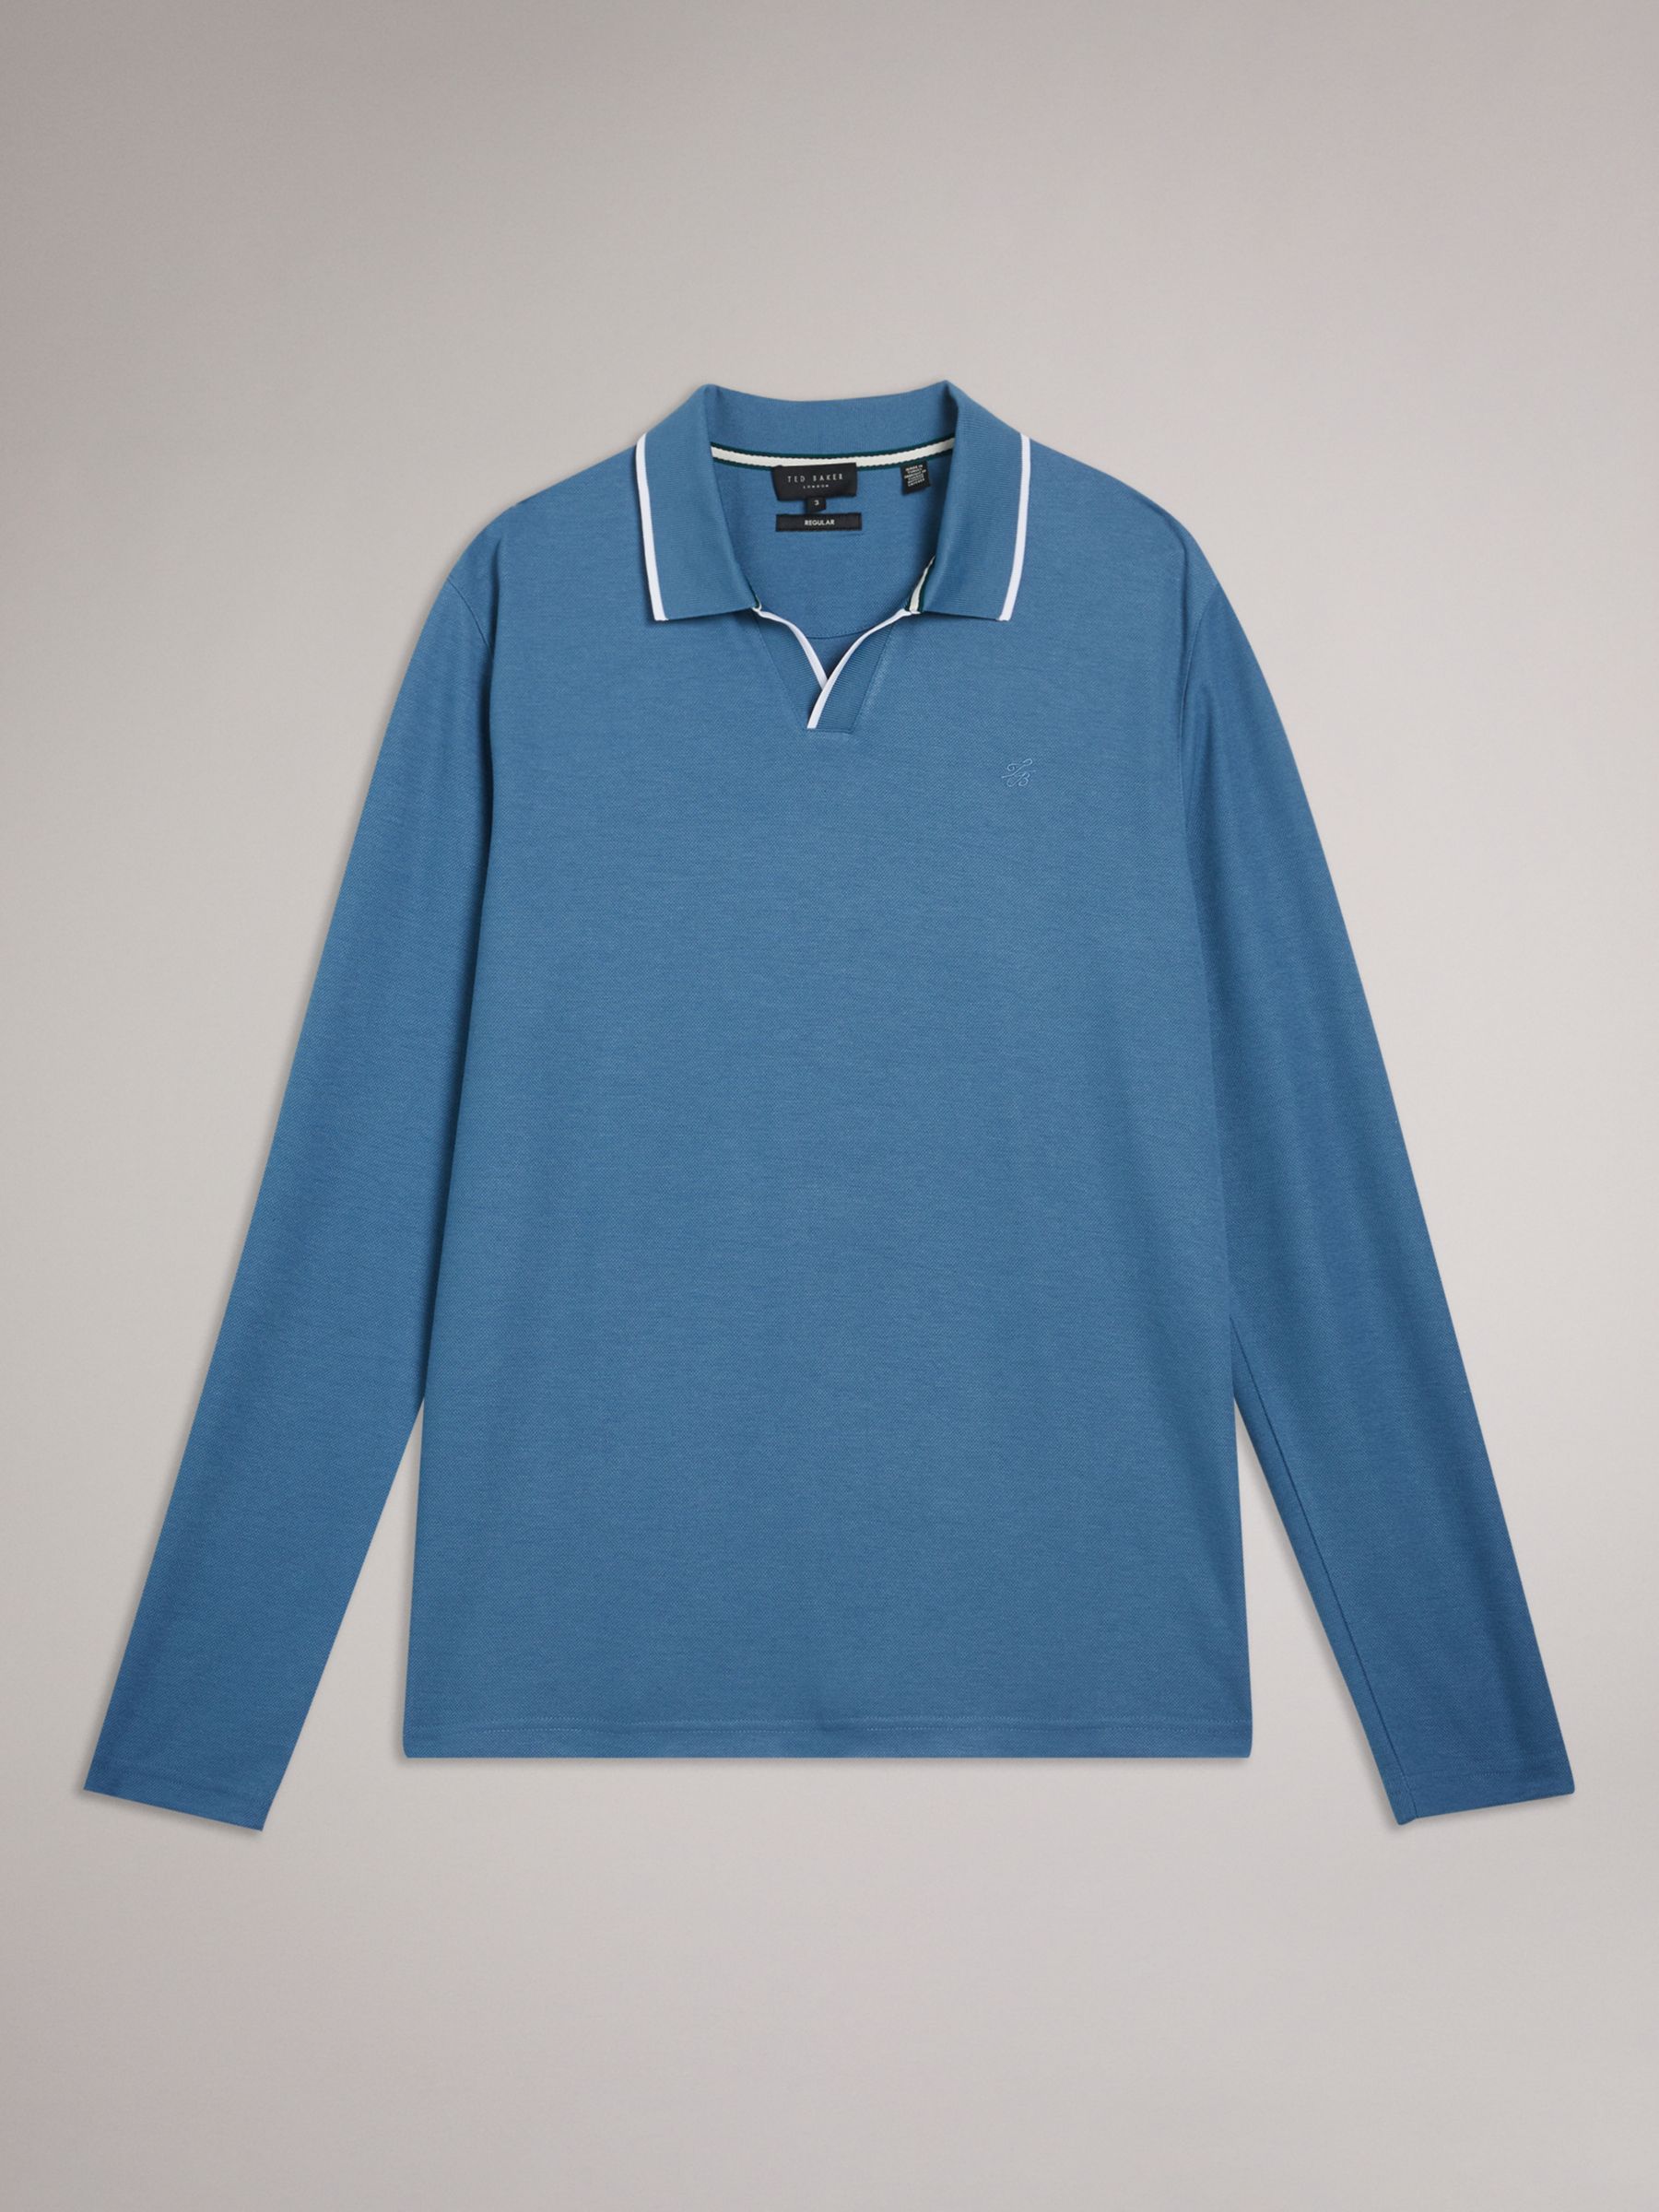 Ted Baker Maste Long Sleeve Regular Polo Shirt, Blue, S